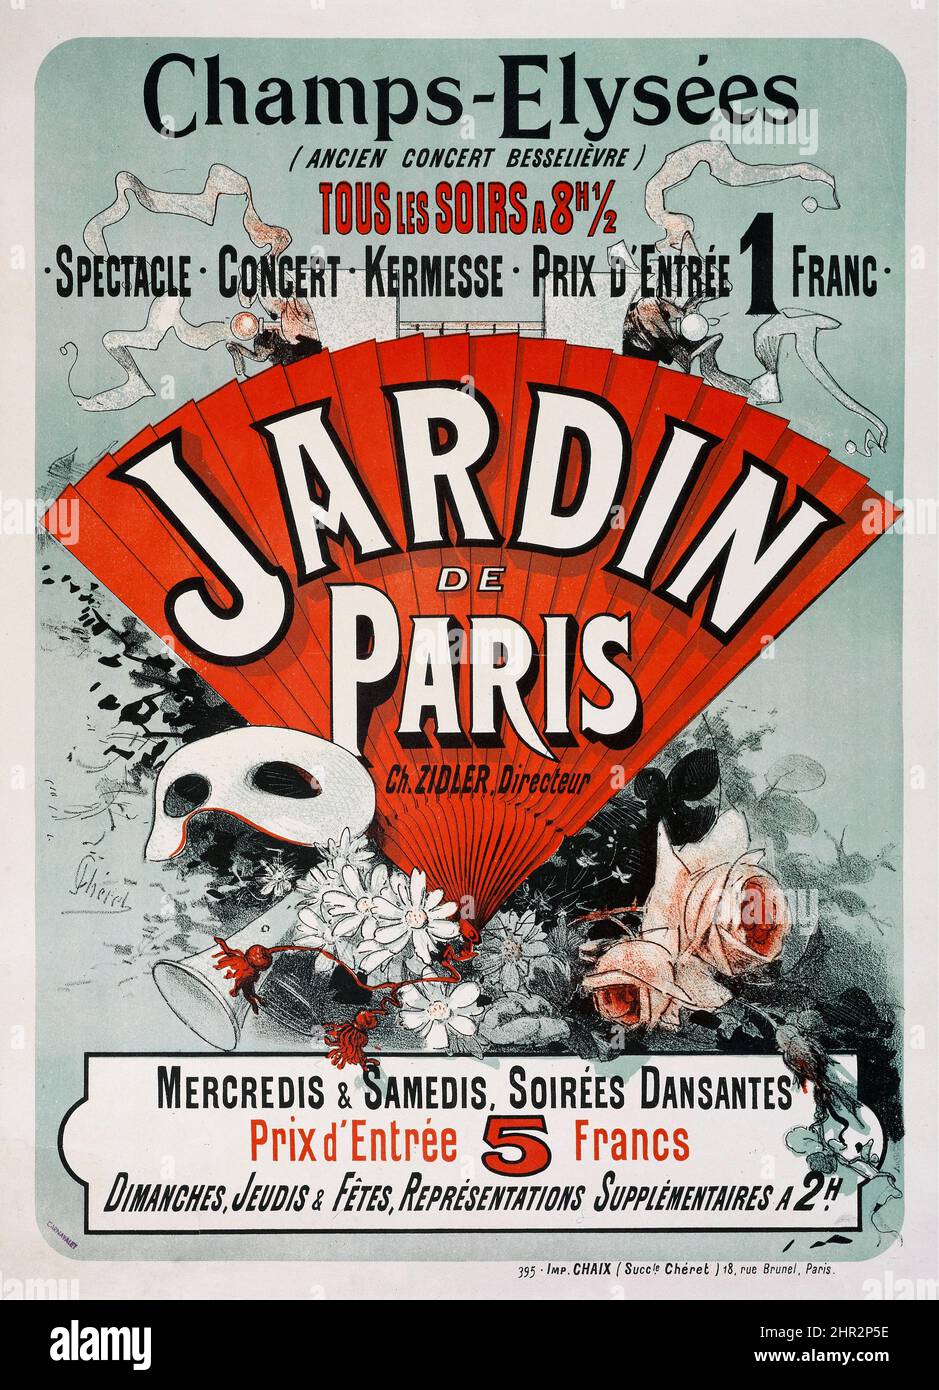 Champs-Elysées, Jardin De Paris (1884) Jules Chéret (French, 1836-1932) -  vintage advertisement poster - La belle époque poster Stock Photo - Alamy